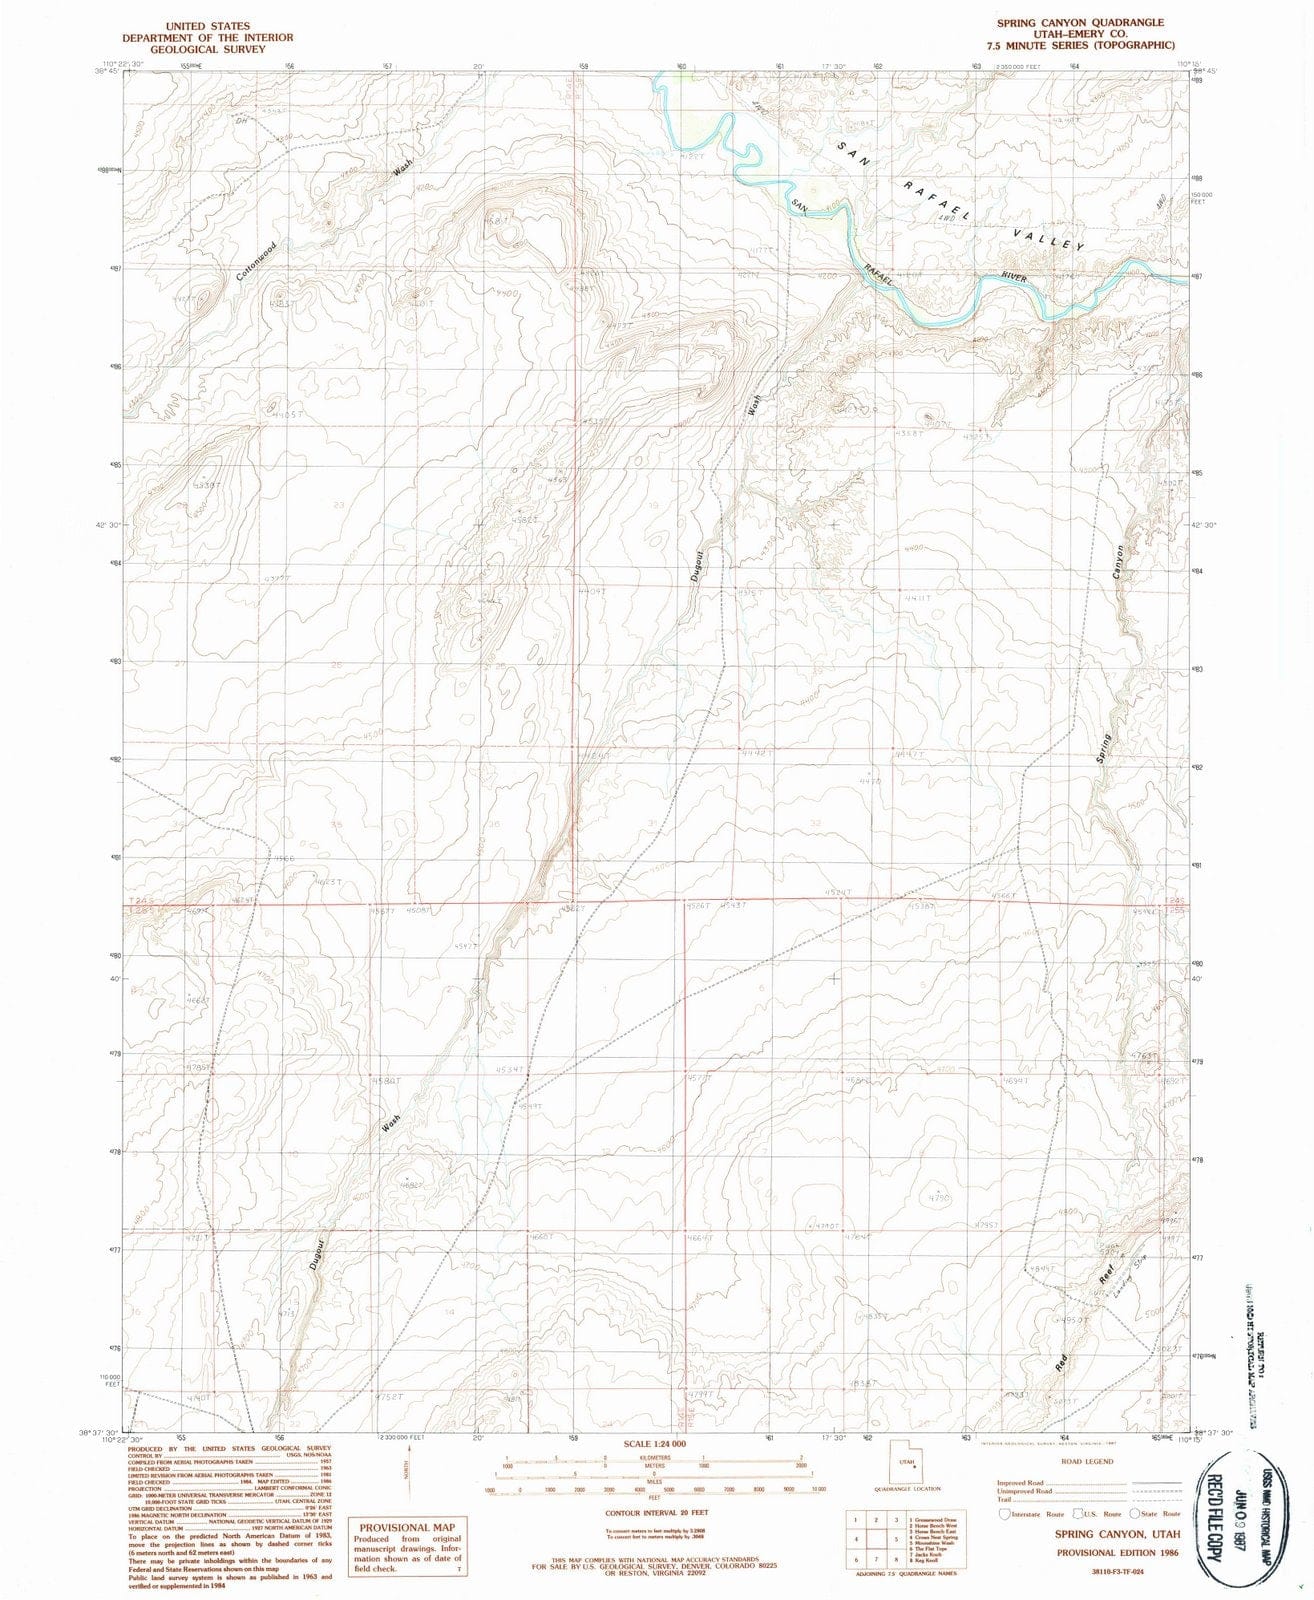 1986 Spring Canyon, UT - Utah - USGS Topographic Map